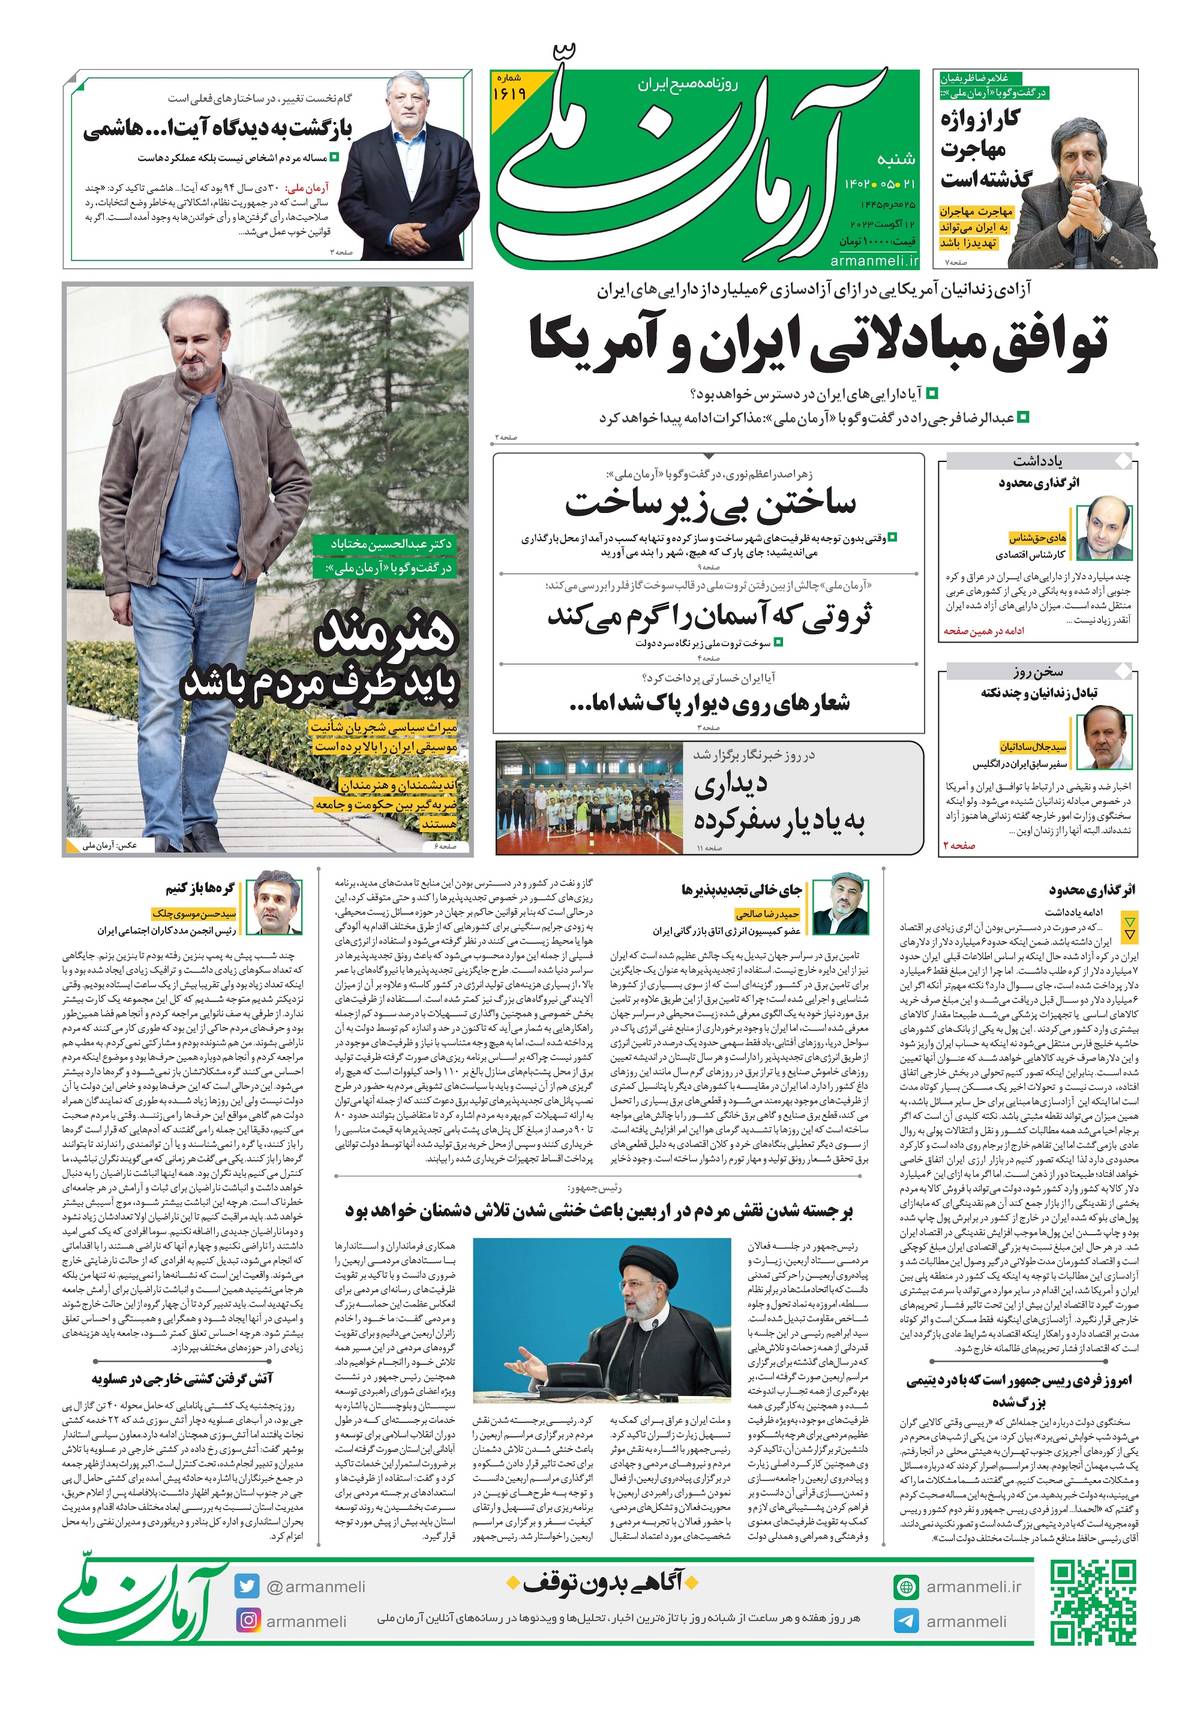 روزنامه آرمان ملی - شنبه 21 مرداد - شماره 1619